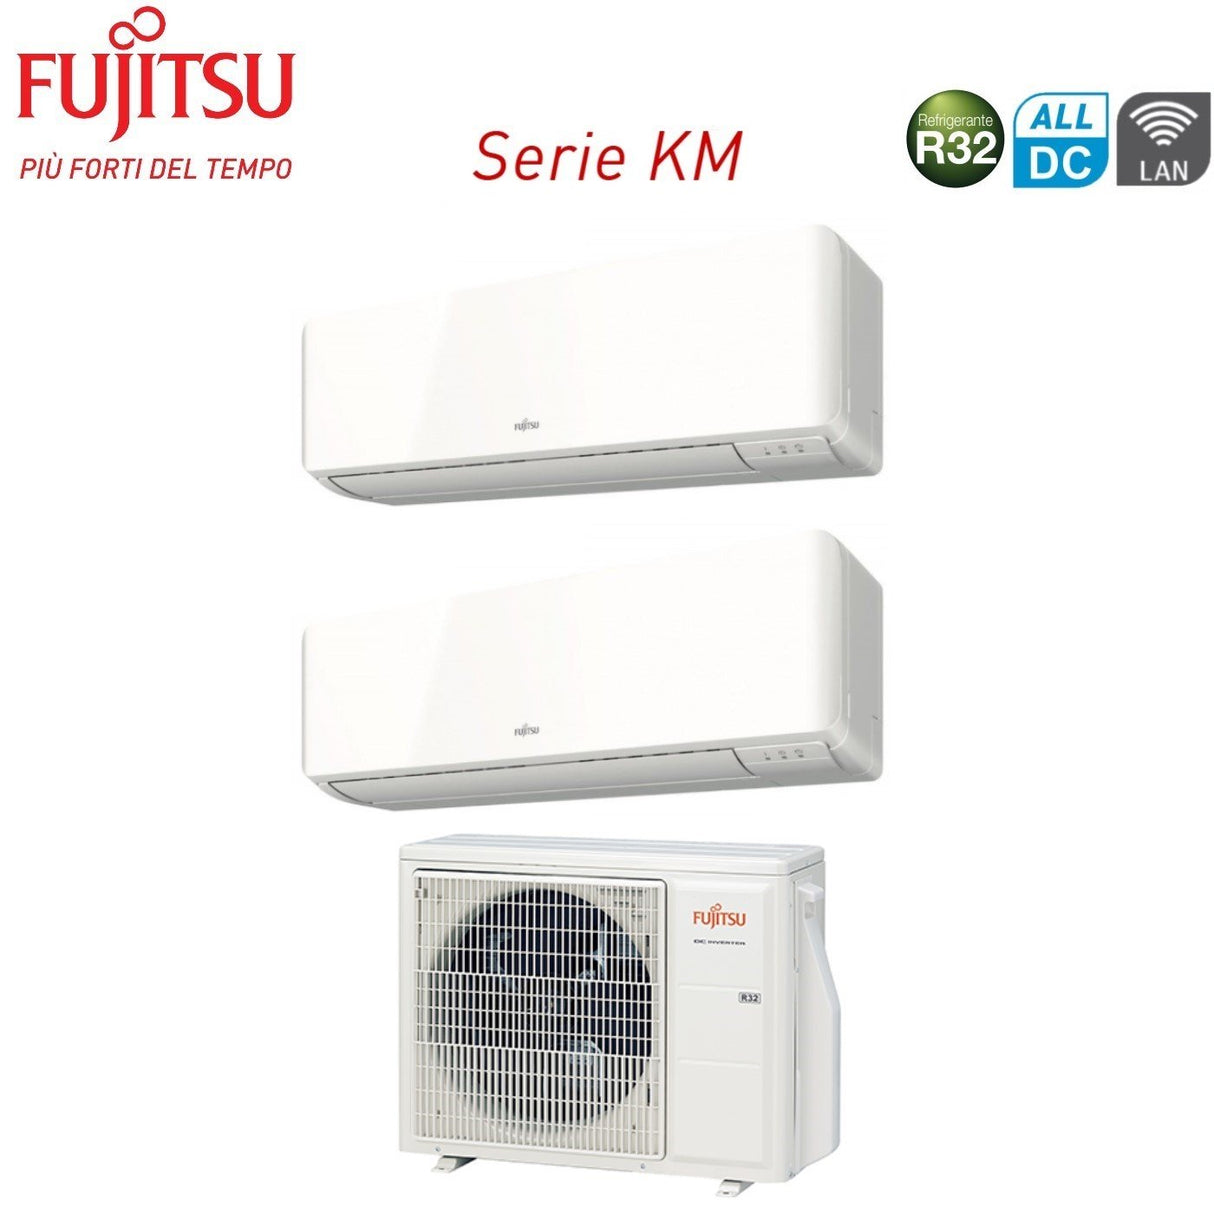 immagine-1-fujitsu-climatizzatore-condizionatore-fujitsu-dual-split-inverter-serie-km-1212-con-aoyg18kbta2-r-32-wi-fi-optional-1200012000-novita-ean-8059657011268